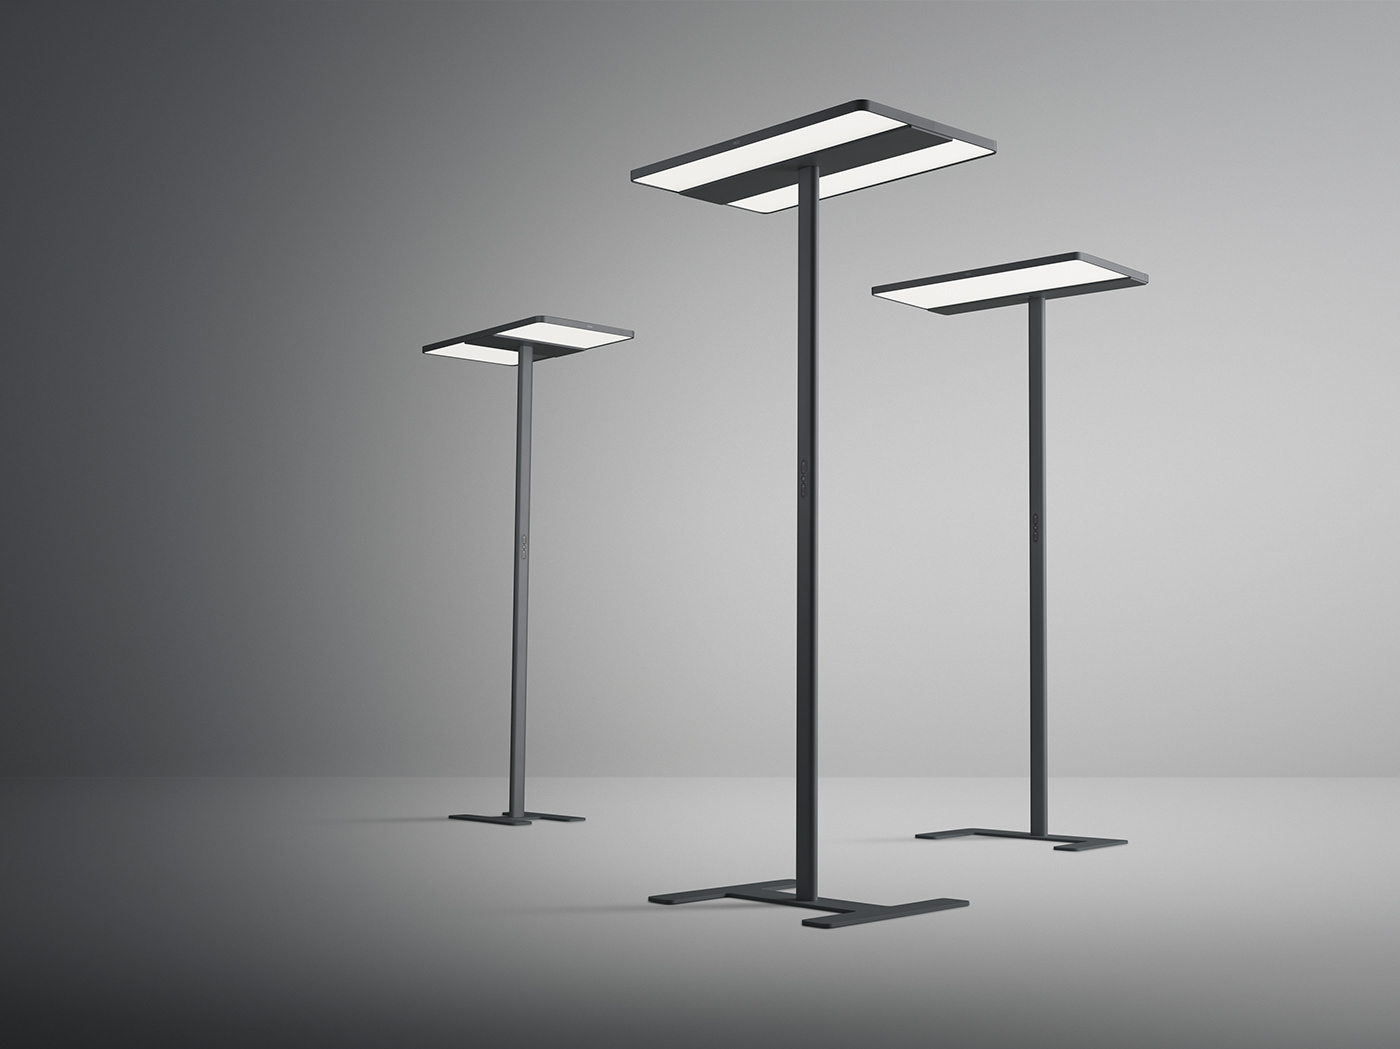 Lamp light minimalist